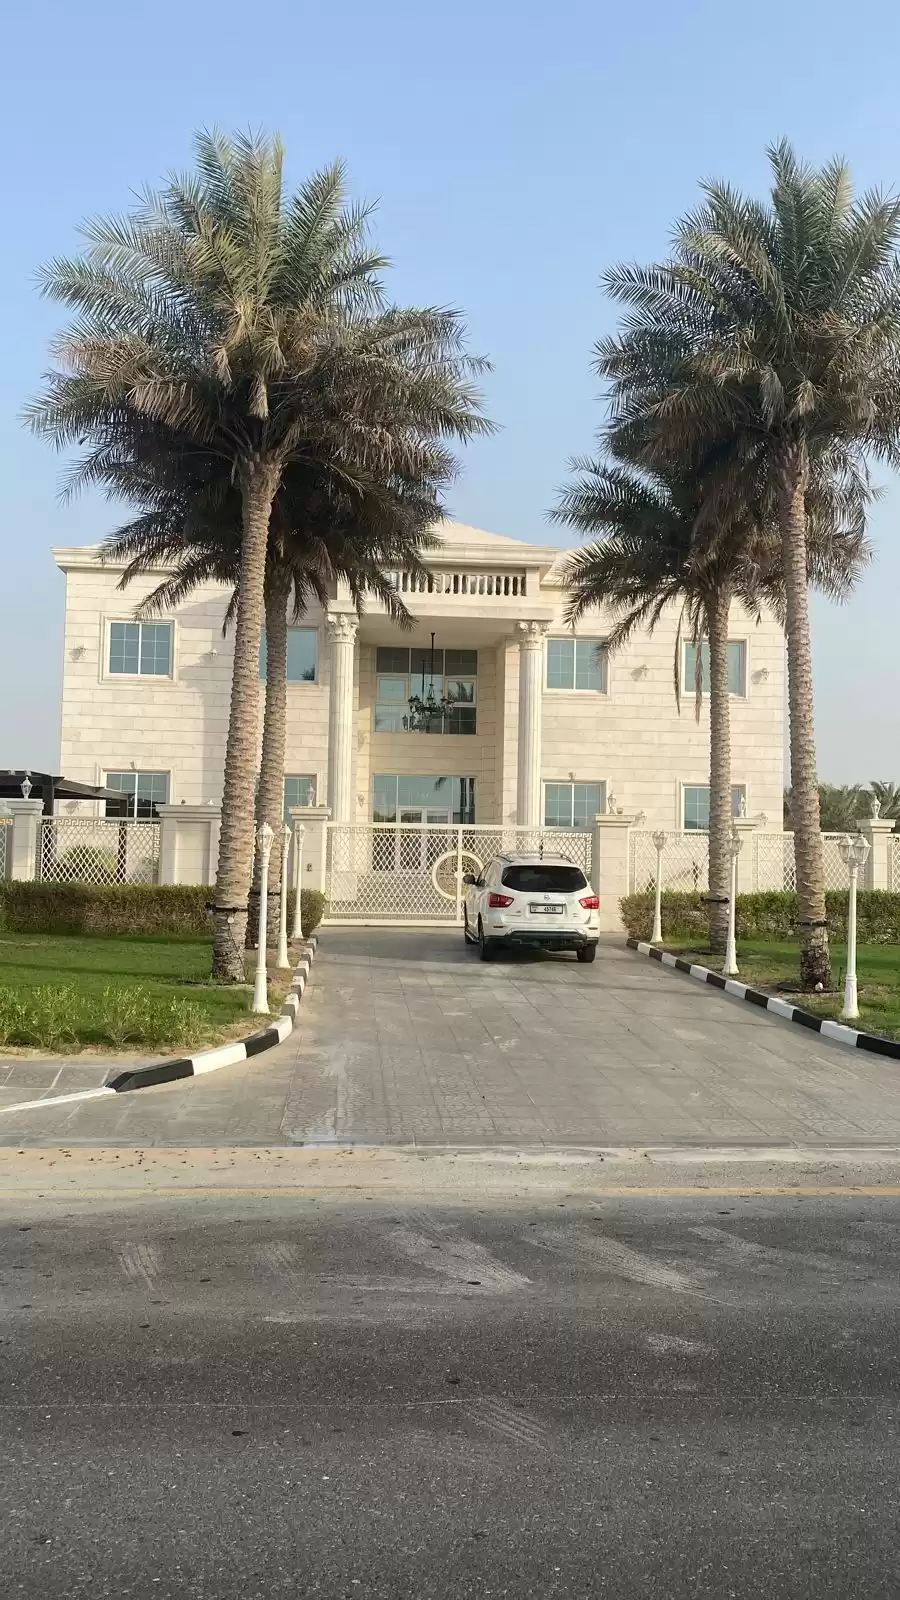 Résidentiel Propriété prête 7 chambres U / f Villa autonome  a louer au AL WARQA'A QUATRIÈME , Dubai #52523 - 1  image 